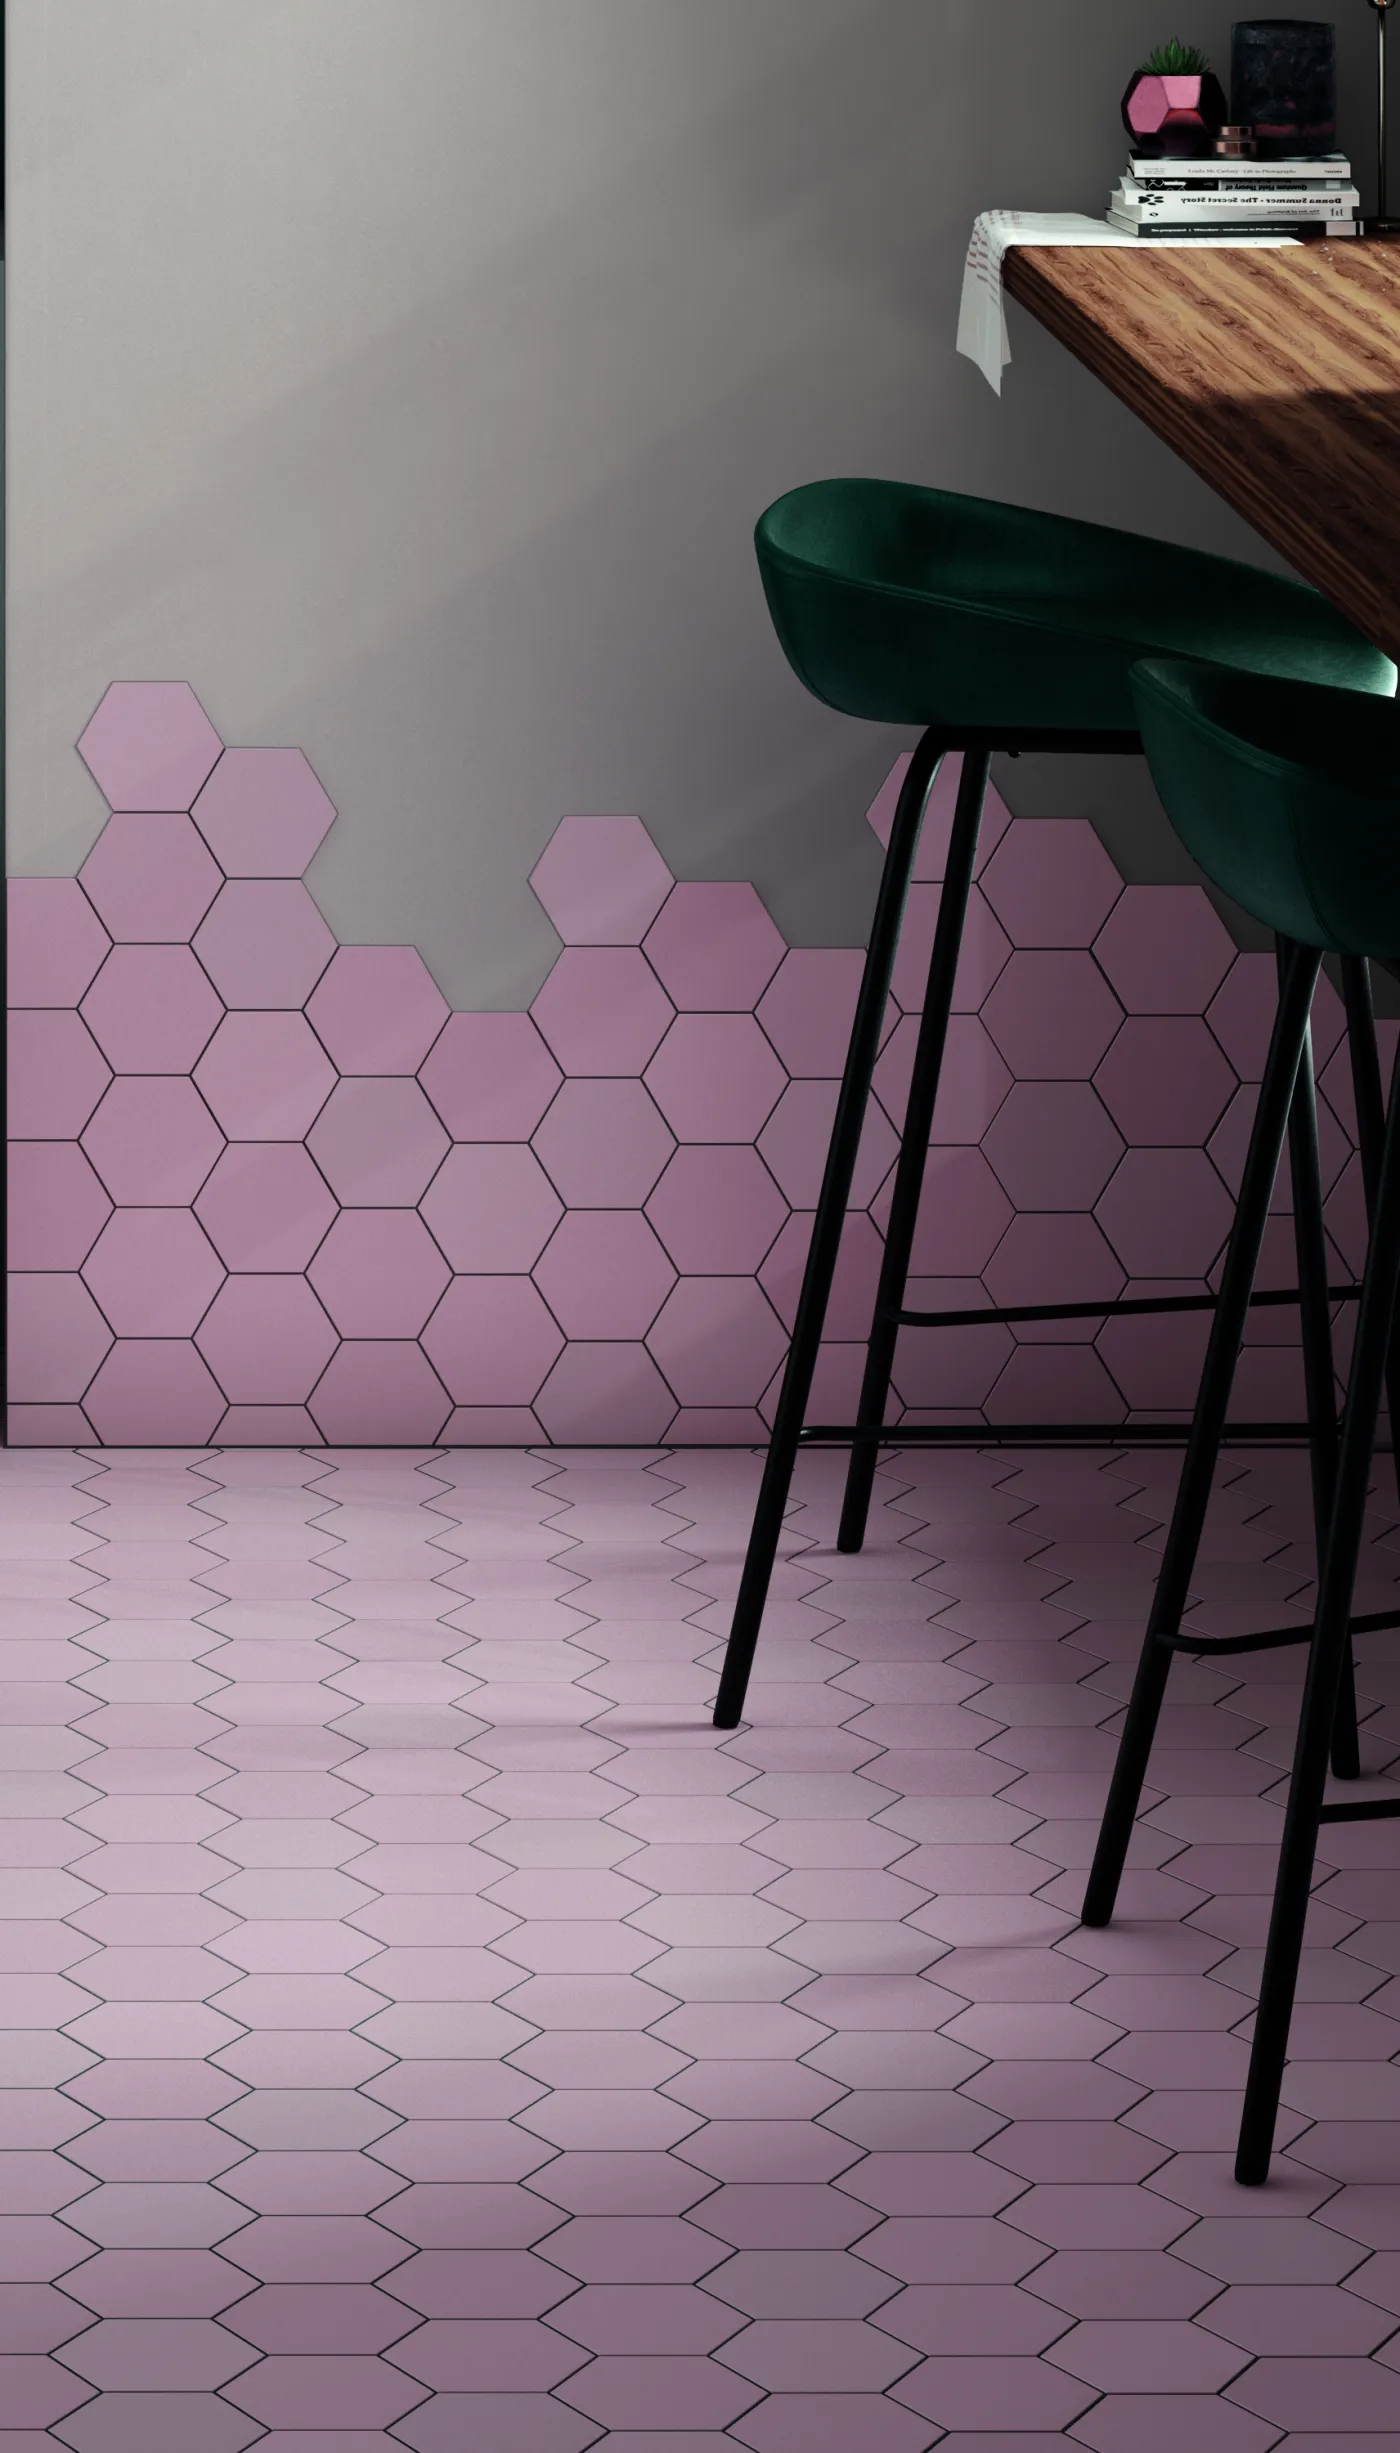 Kromatika Hexagon Rosa Pink | Tile Mountain